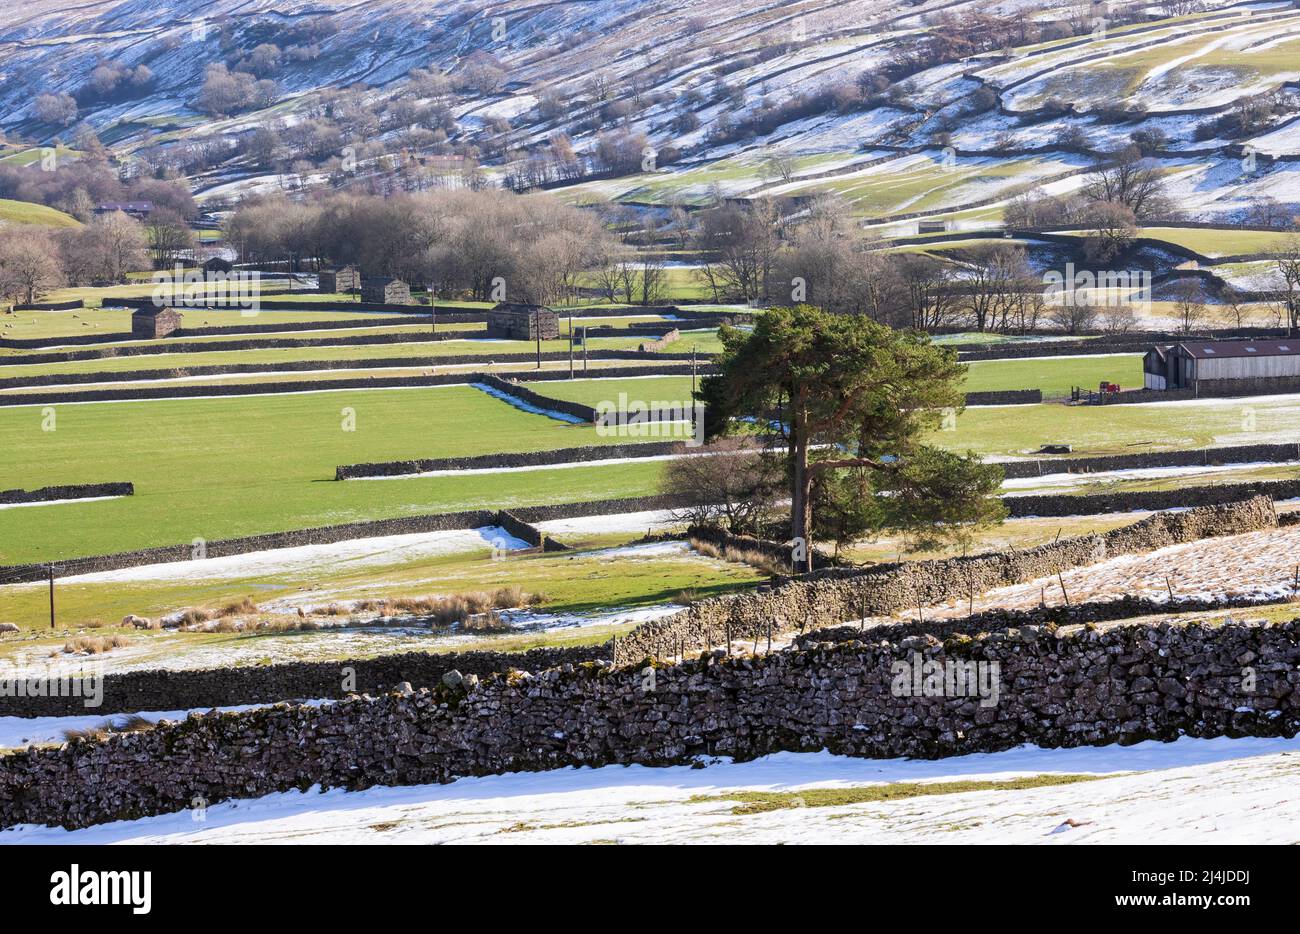 Swaledale, parc national de Yorkshire Dales. Neige aux bords des champs et des pâturages bordés de murs de pierre sèche avec des granges en pierre emblématiques fin février. Banque D'Images